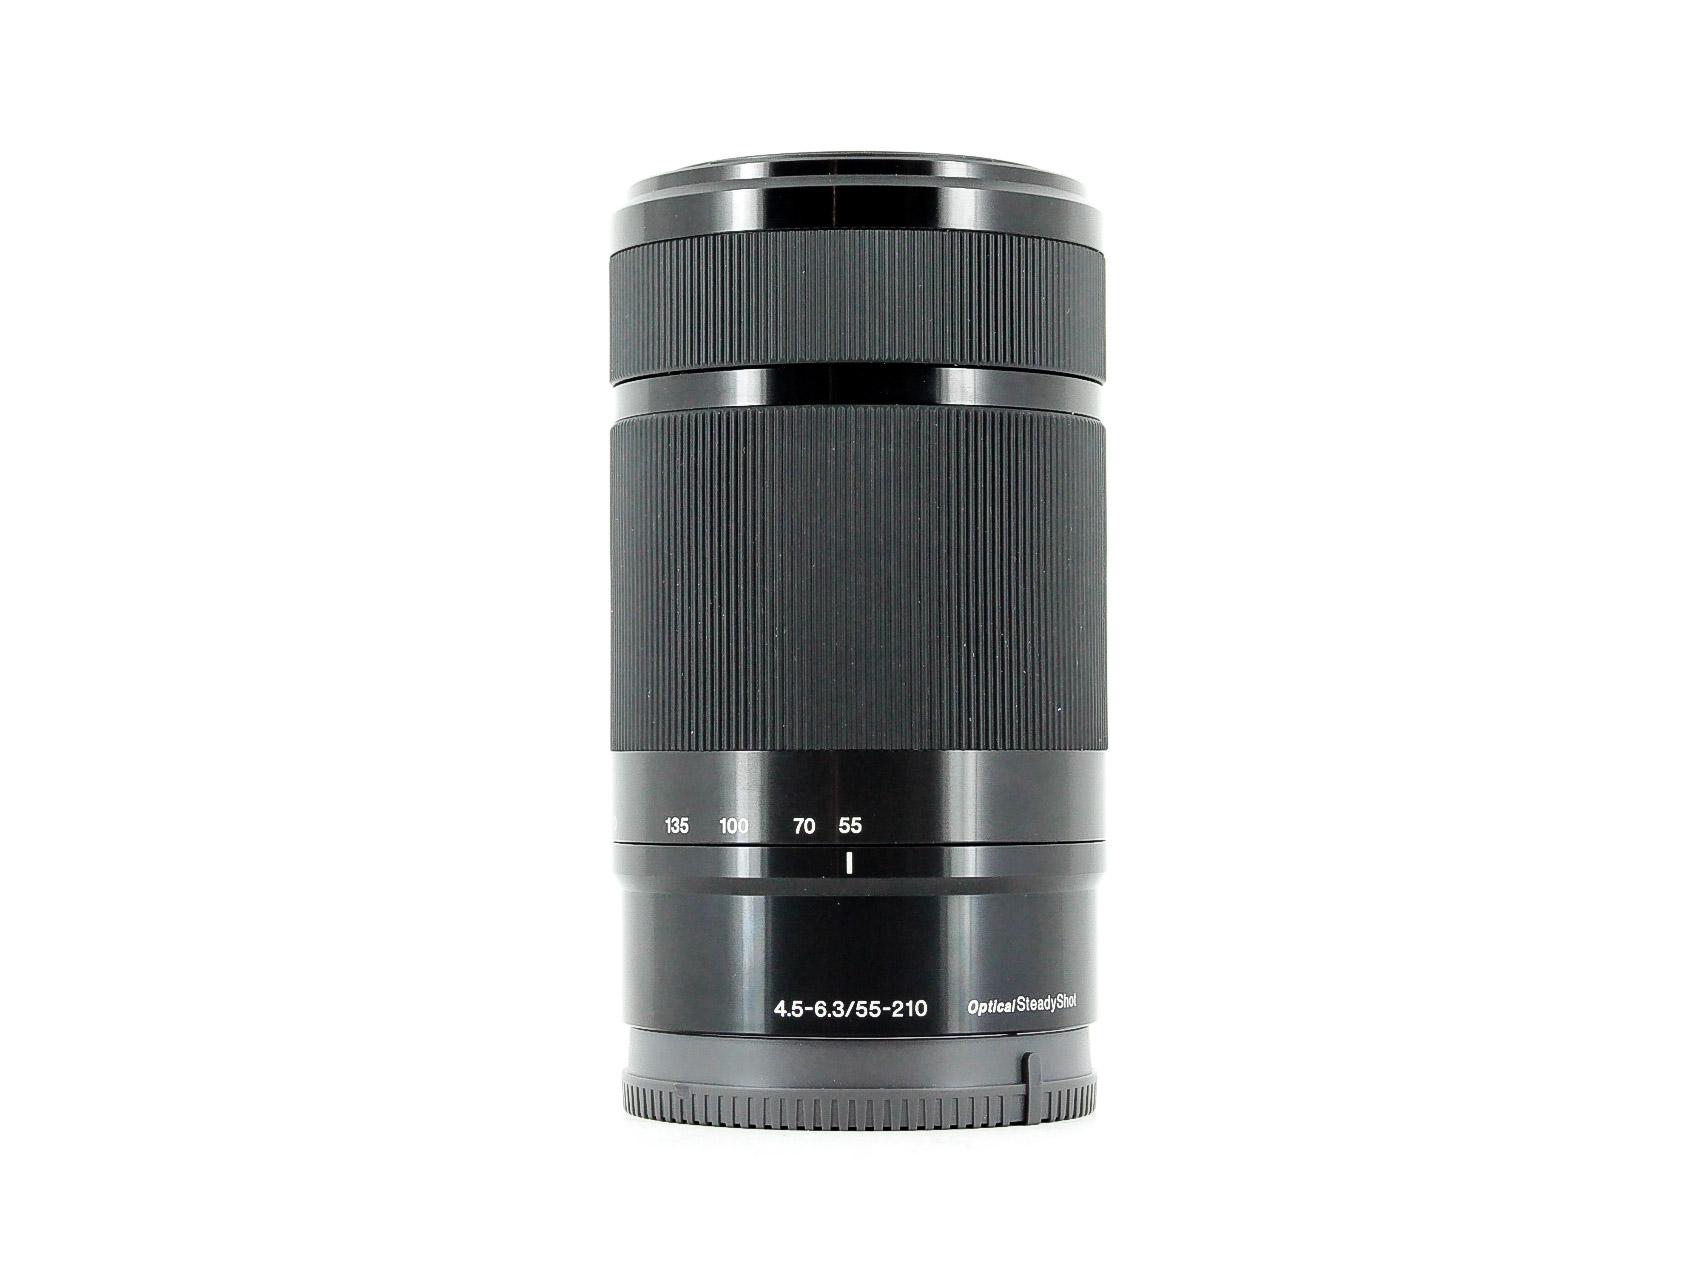 Sony E 55-210mm f/4.5-6.3 SEL55210 OSS Lens - Lenses and Cameras